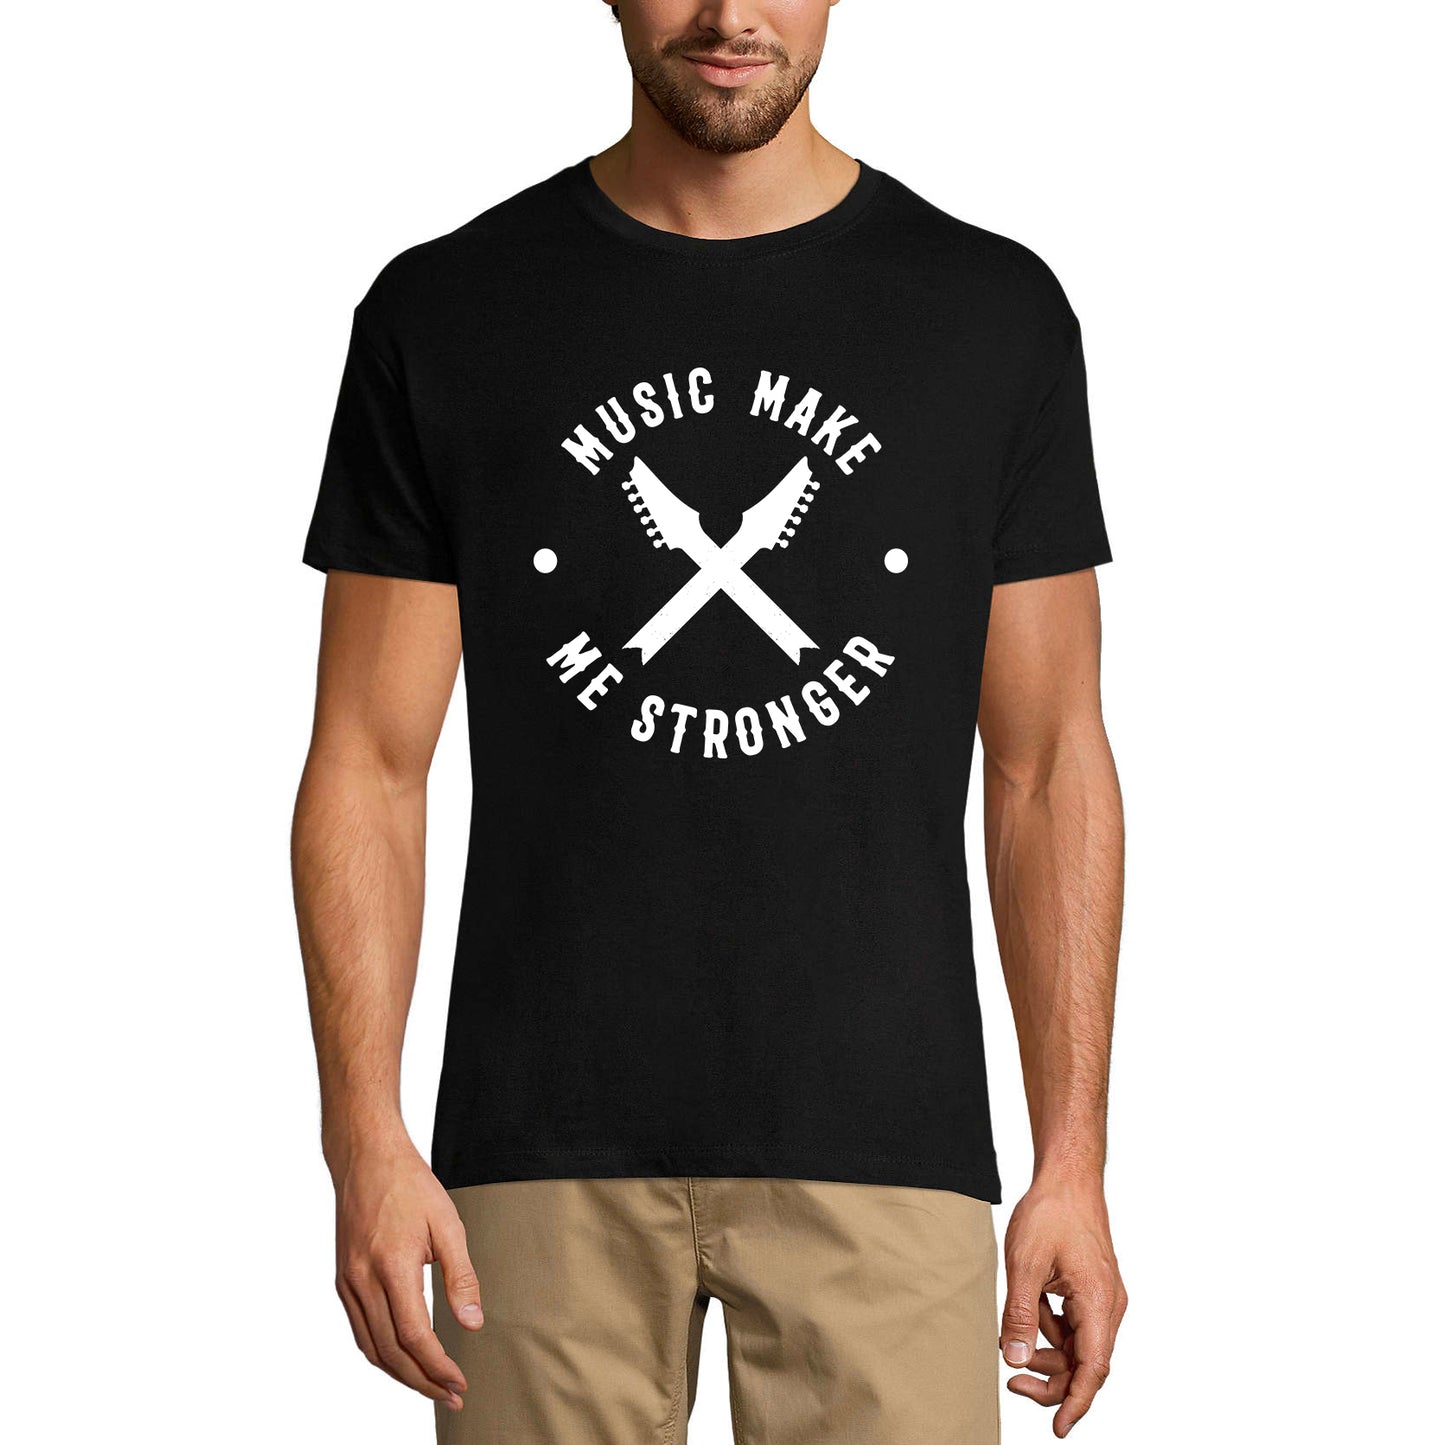 ULTRABASIC Men's T-Shirt Music Make Me Stronger - Guitar Shirt for Musician